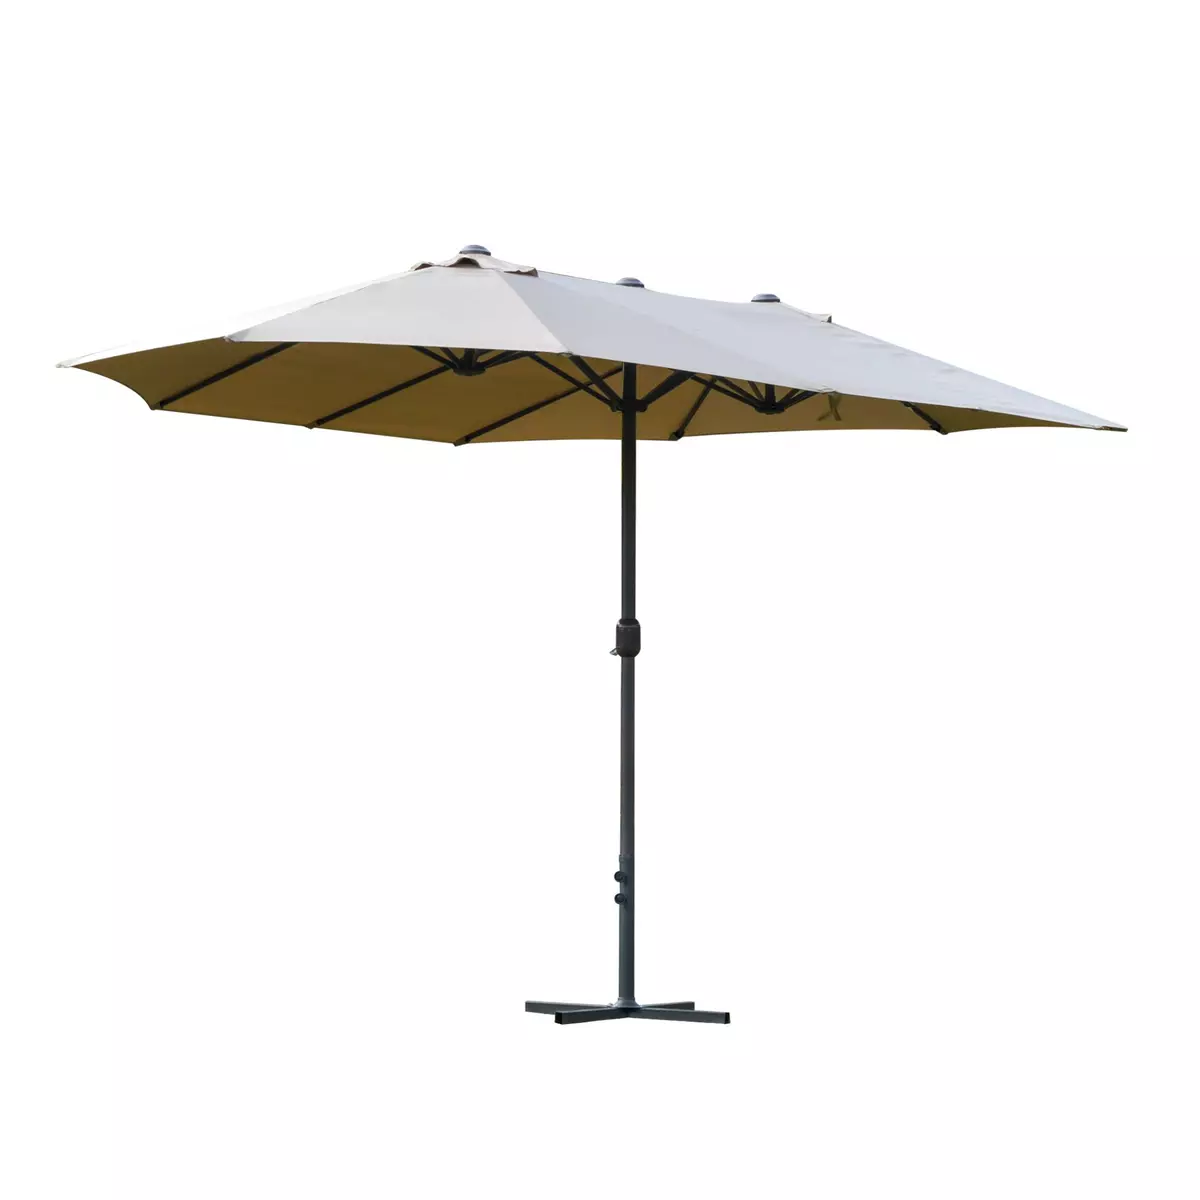 OUTSUNNY Parasol de jardin XXL parasol grande taille 4,6L x 2,7l x 2,4H m ouverture fermeture manivelle acier polyester haute densité café latte